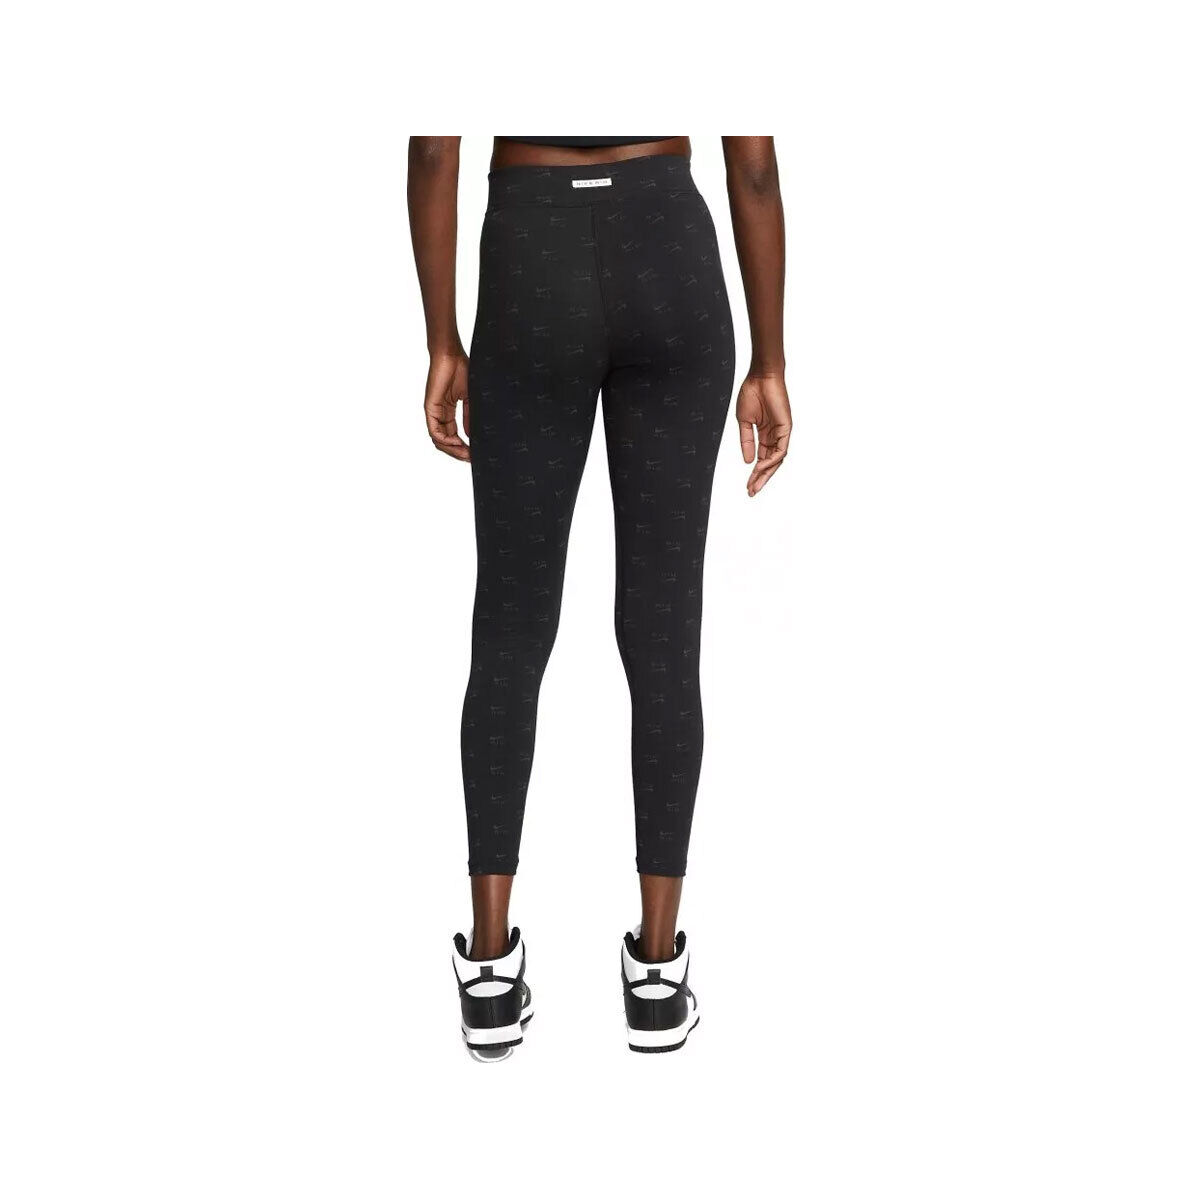 Nike Air Women's High-Waisted Printed Leggings DQ6573-010 Black/White SZ  XS-3XL